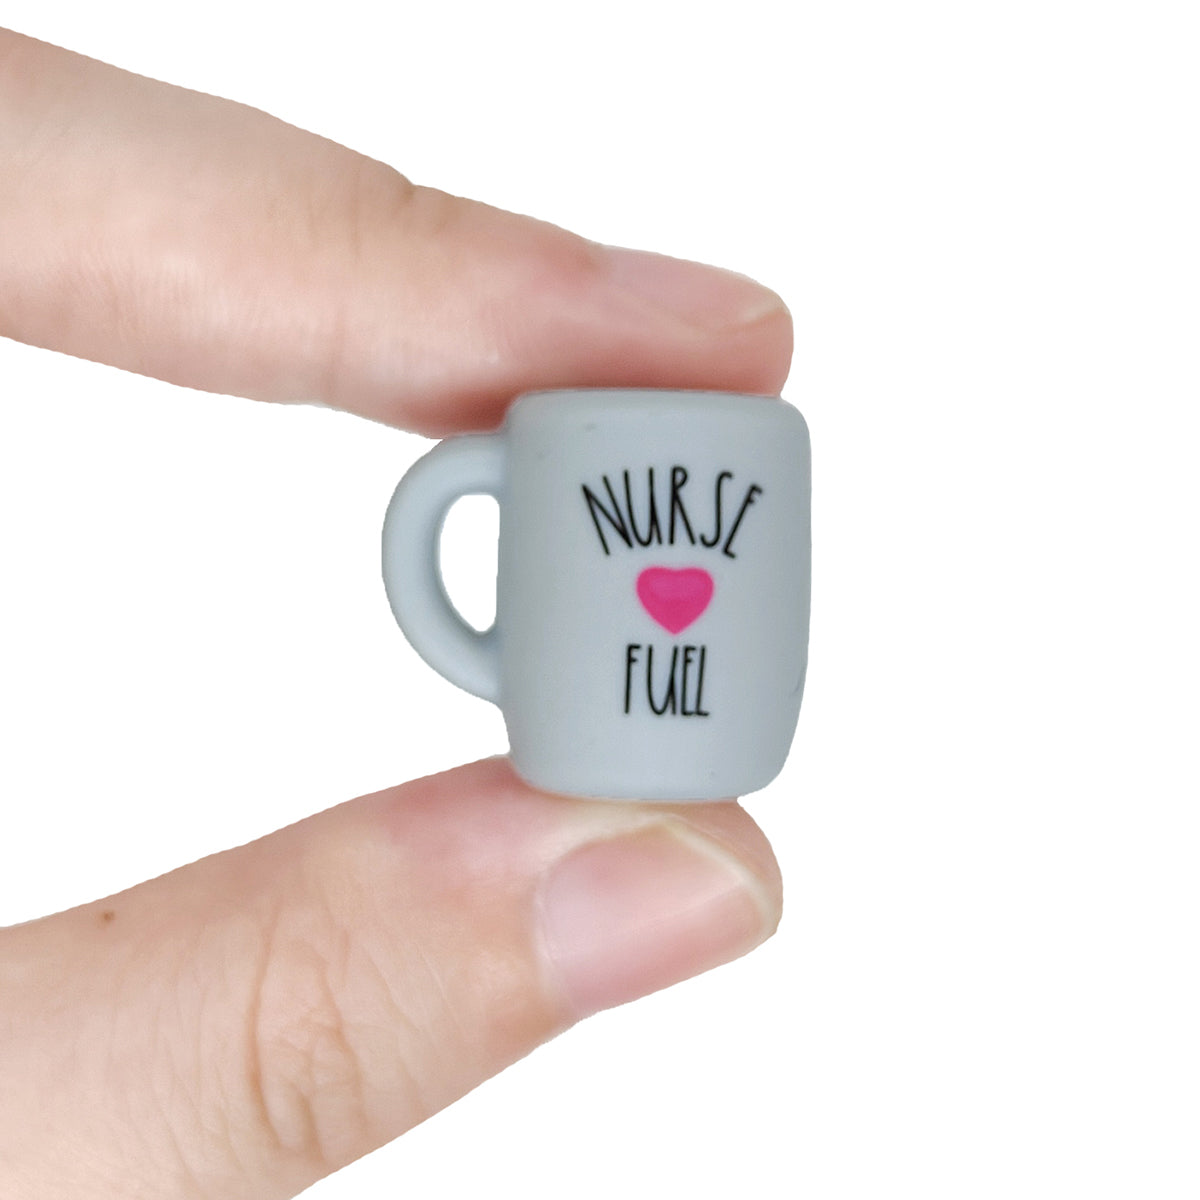 Nurse Fuel Coffee Mug Focal